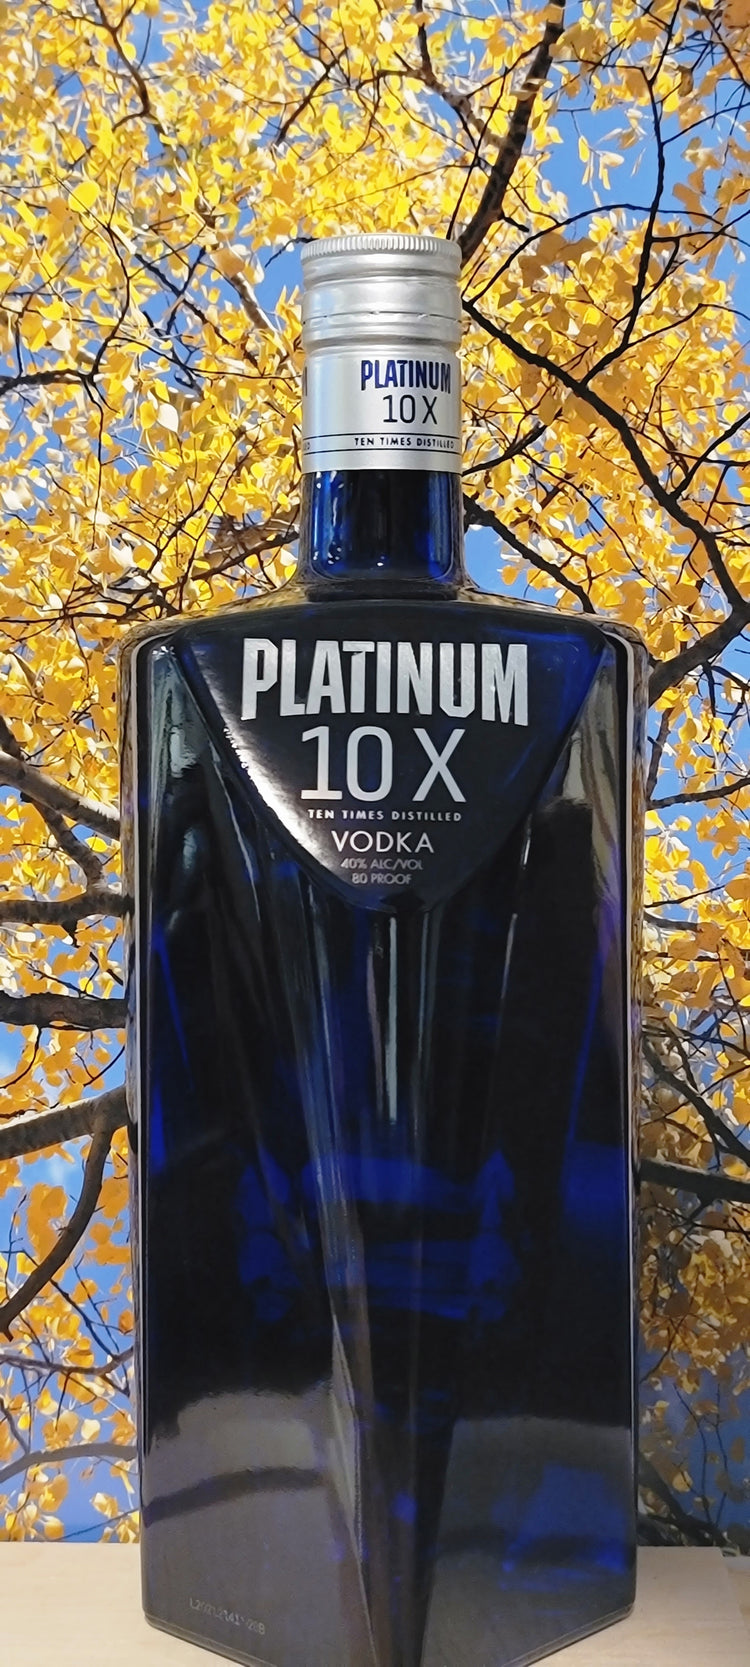 Platinum 10x vodka